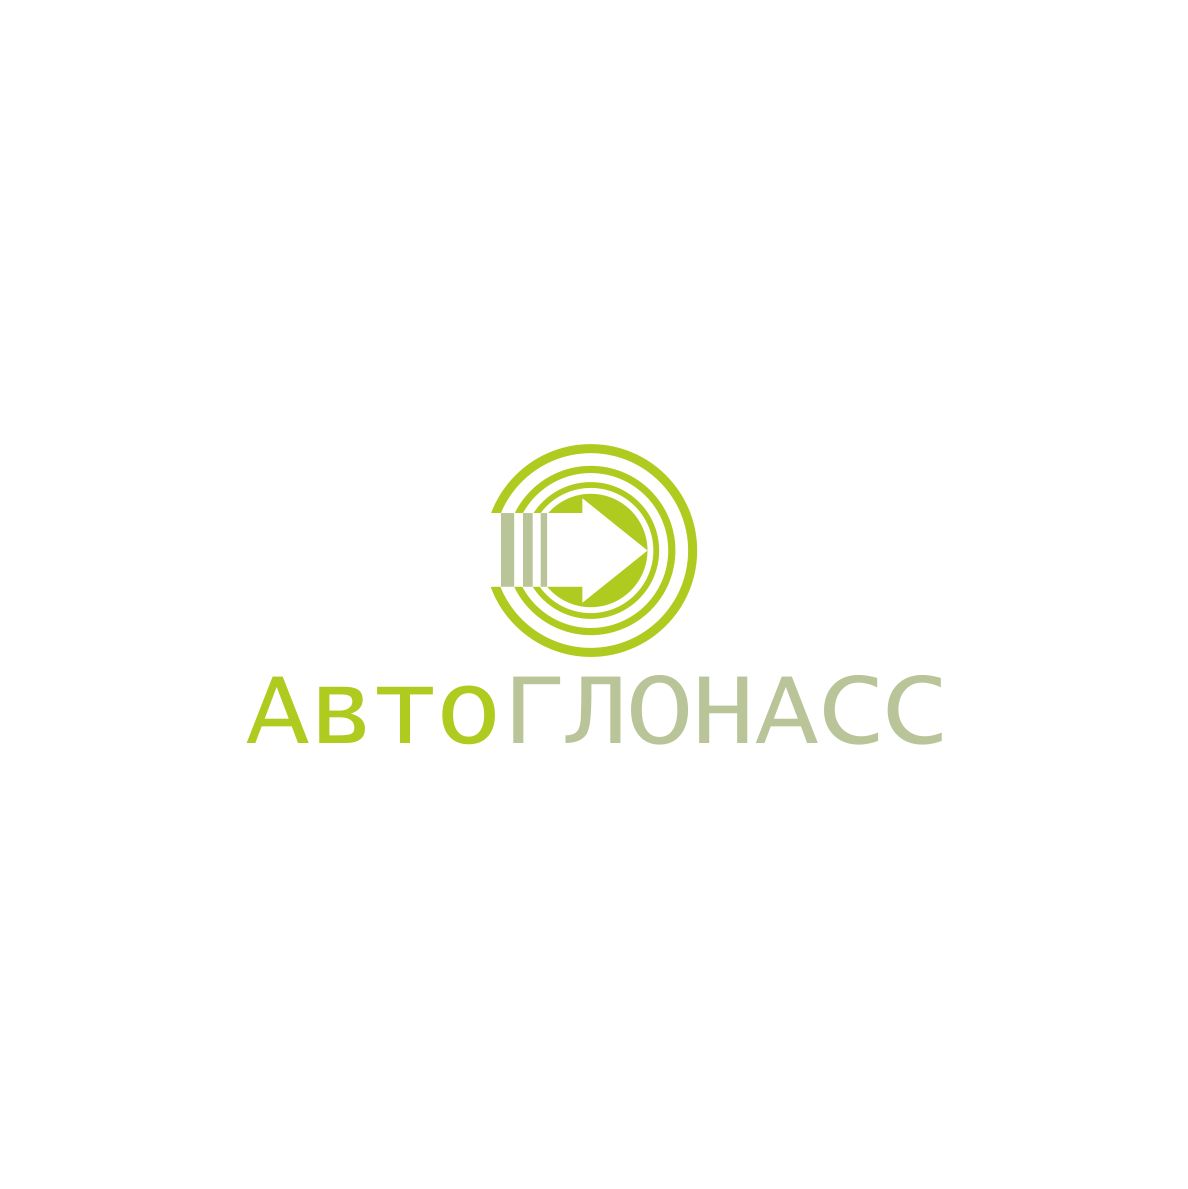 Логотип и фирменный стиль проекта АвтоГЛОНАСС - дизайнер malevich